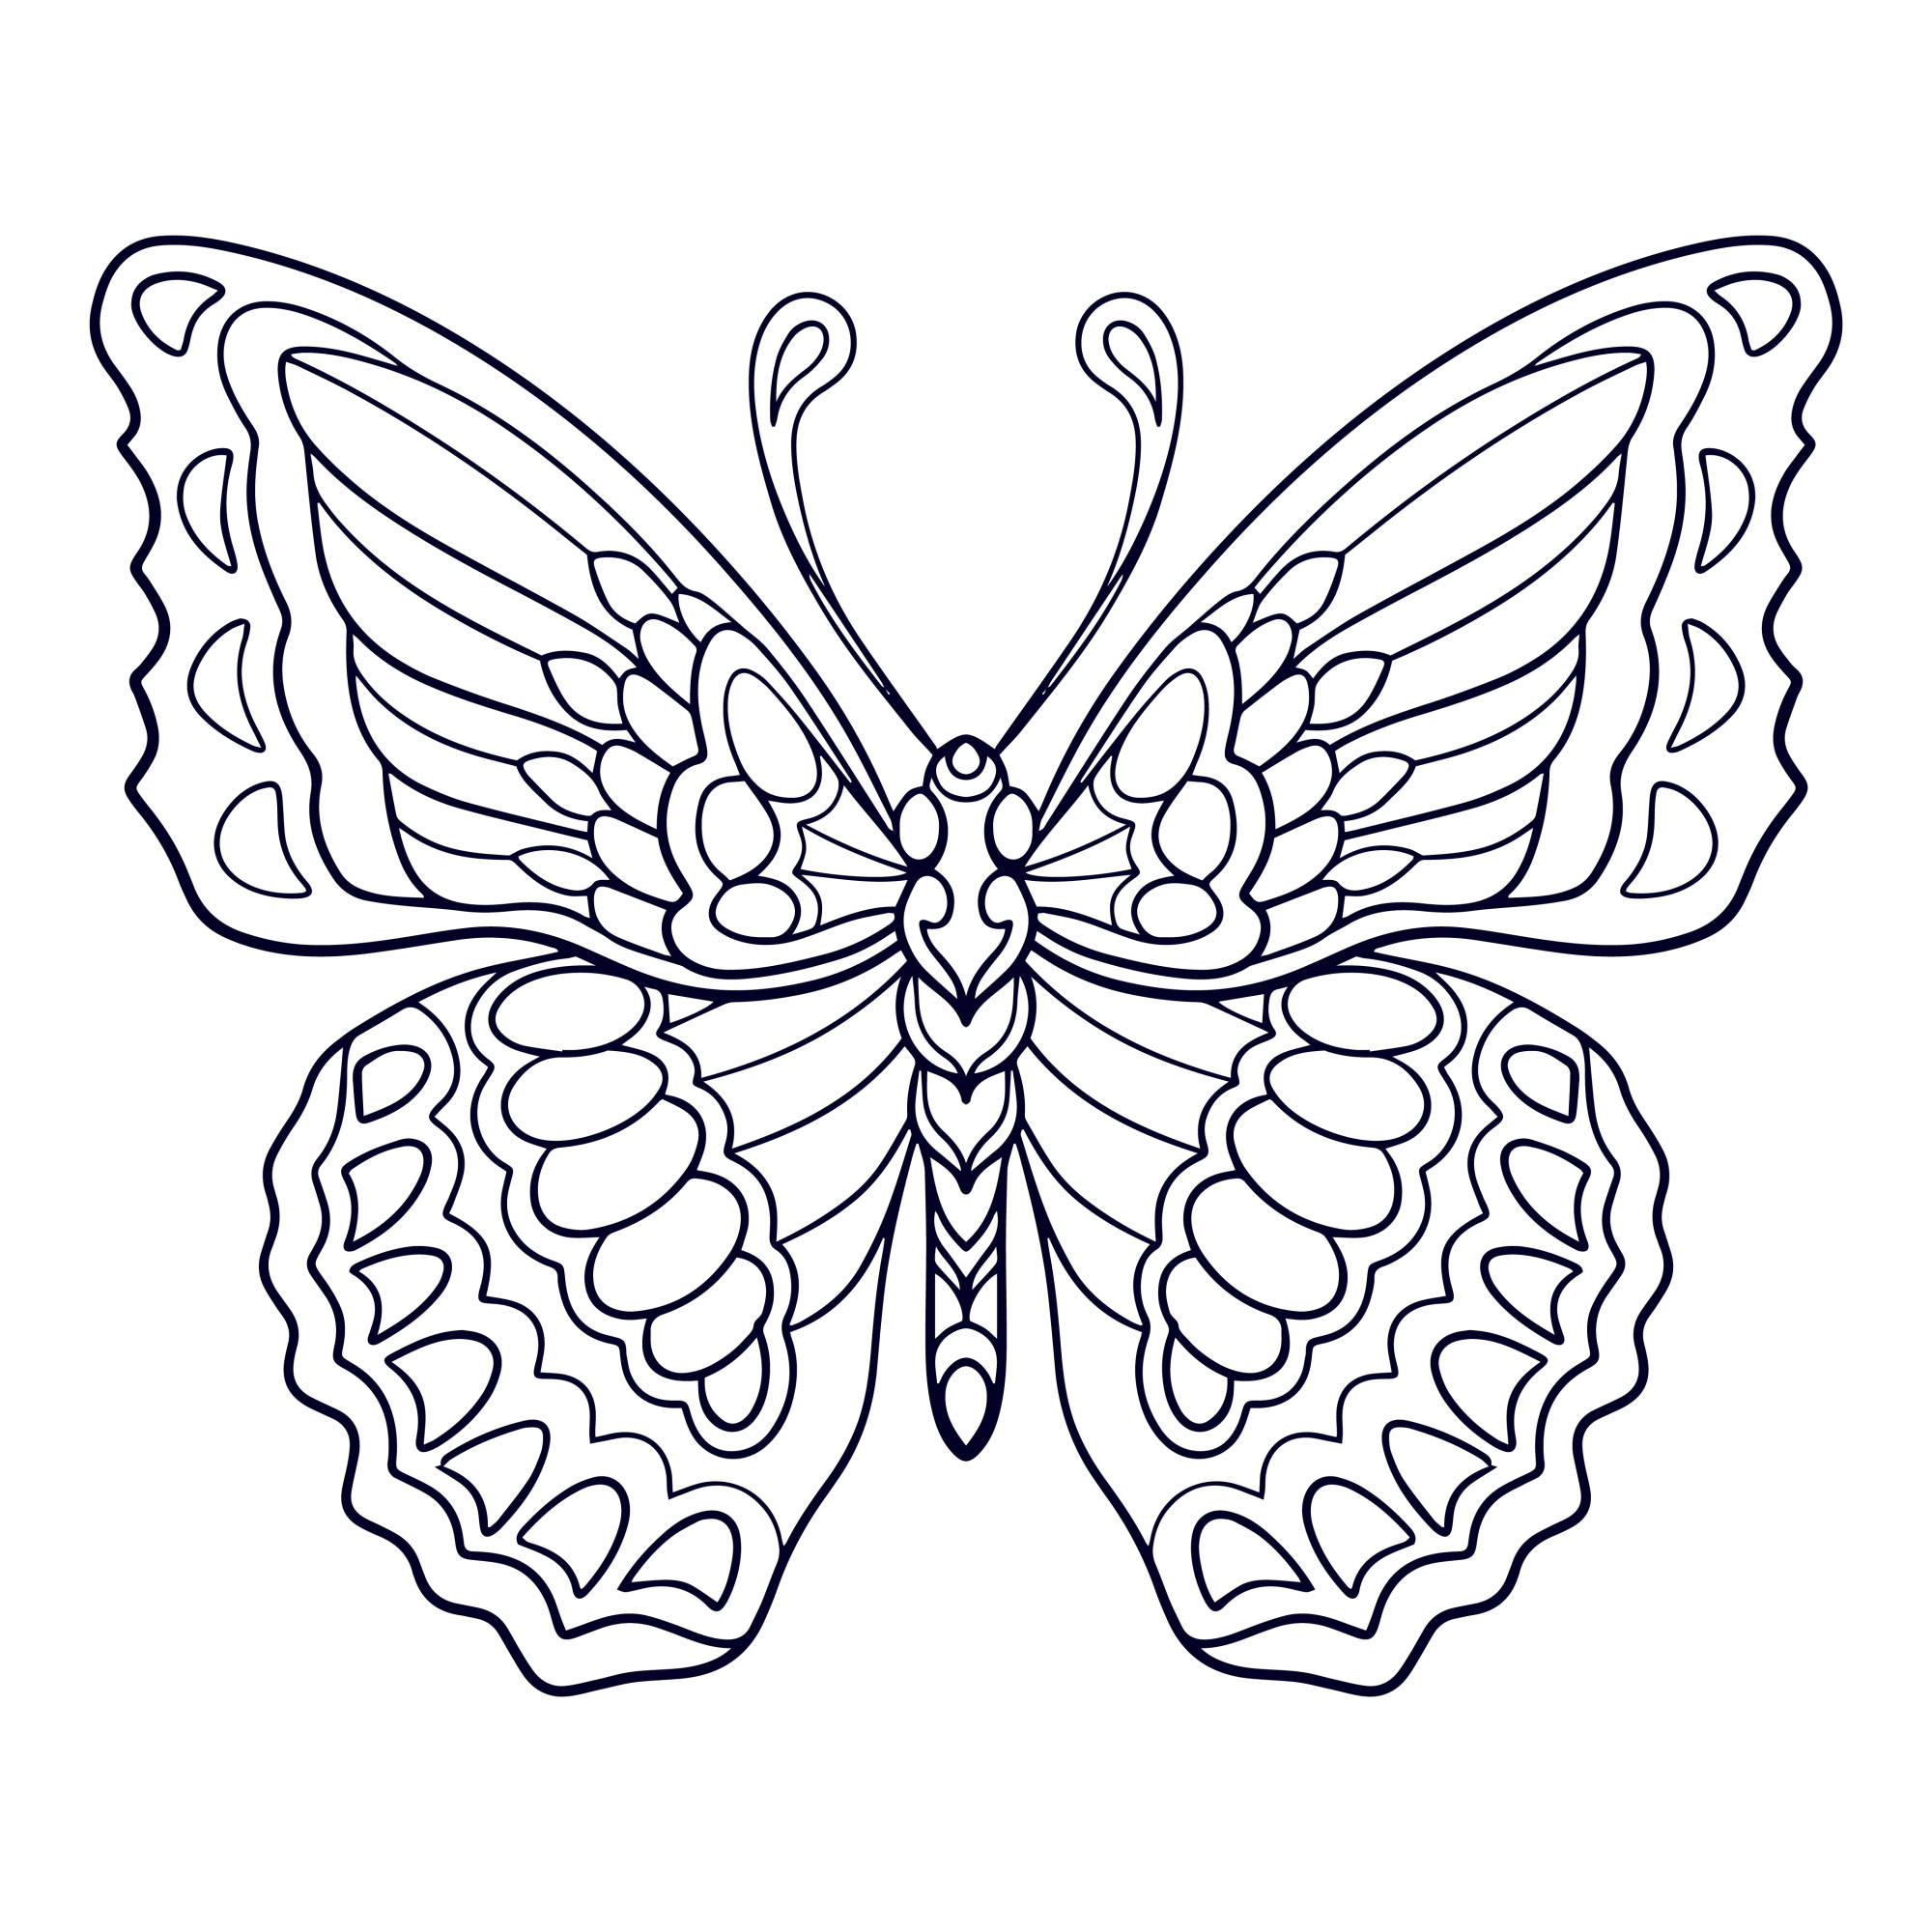 Раскраска для детей: бабочка с рисунком мандала на крыльях